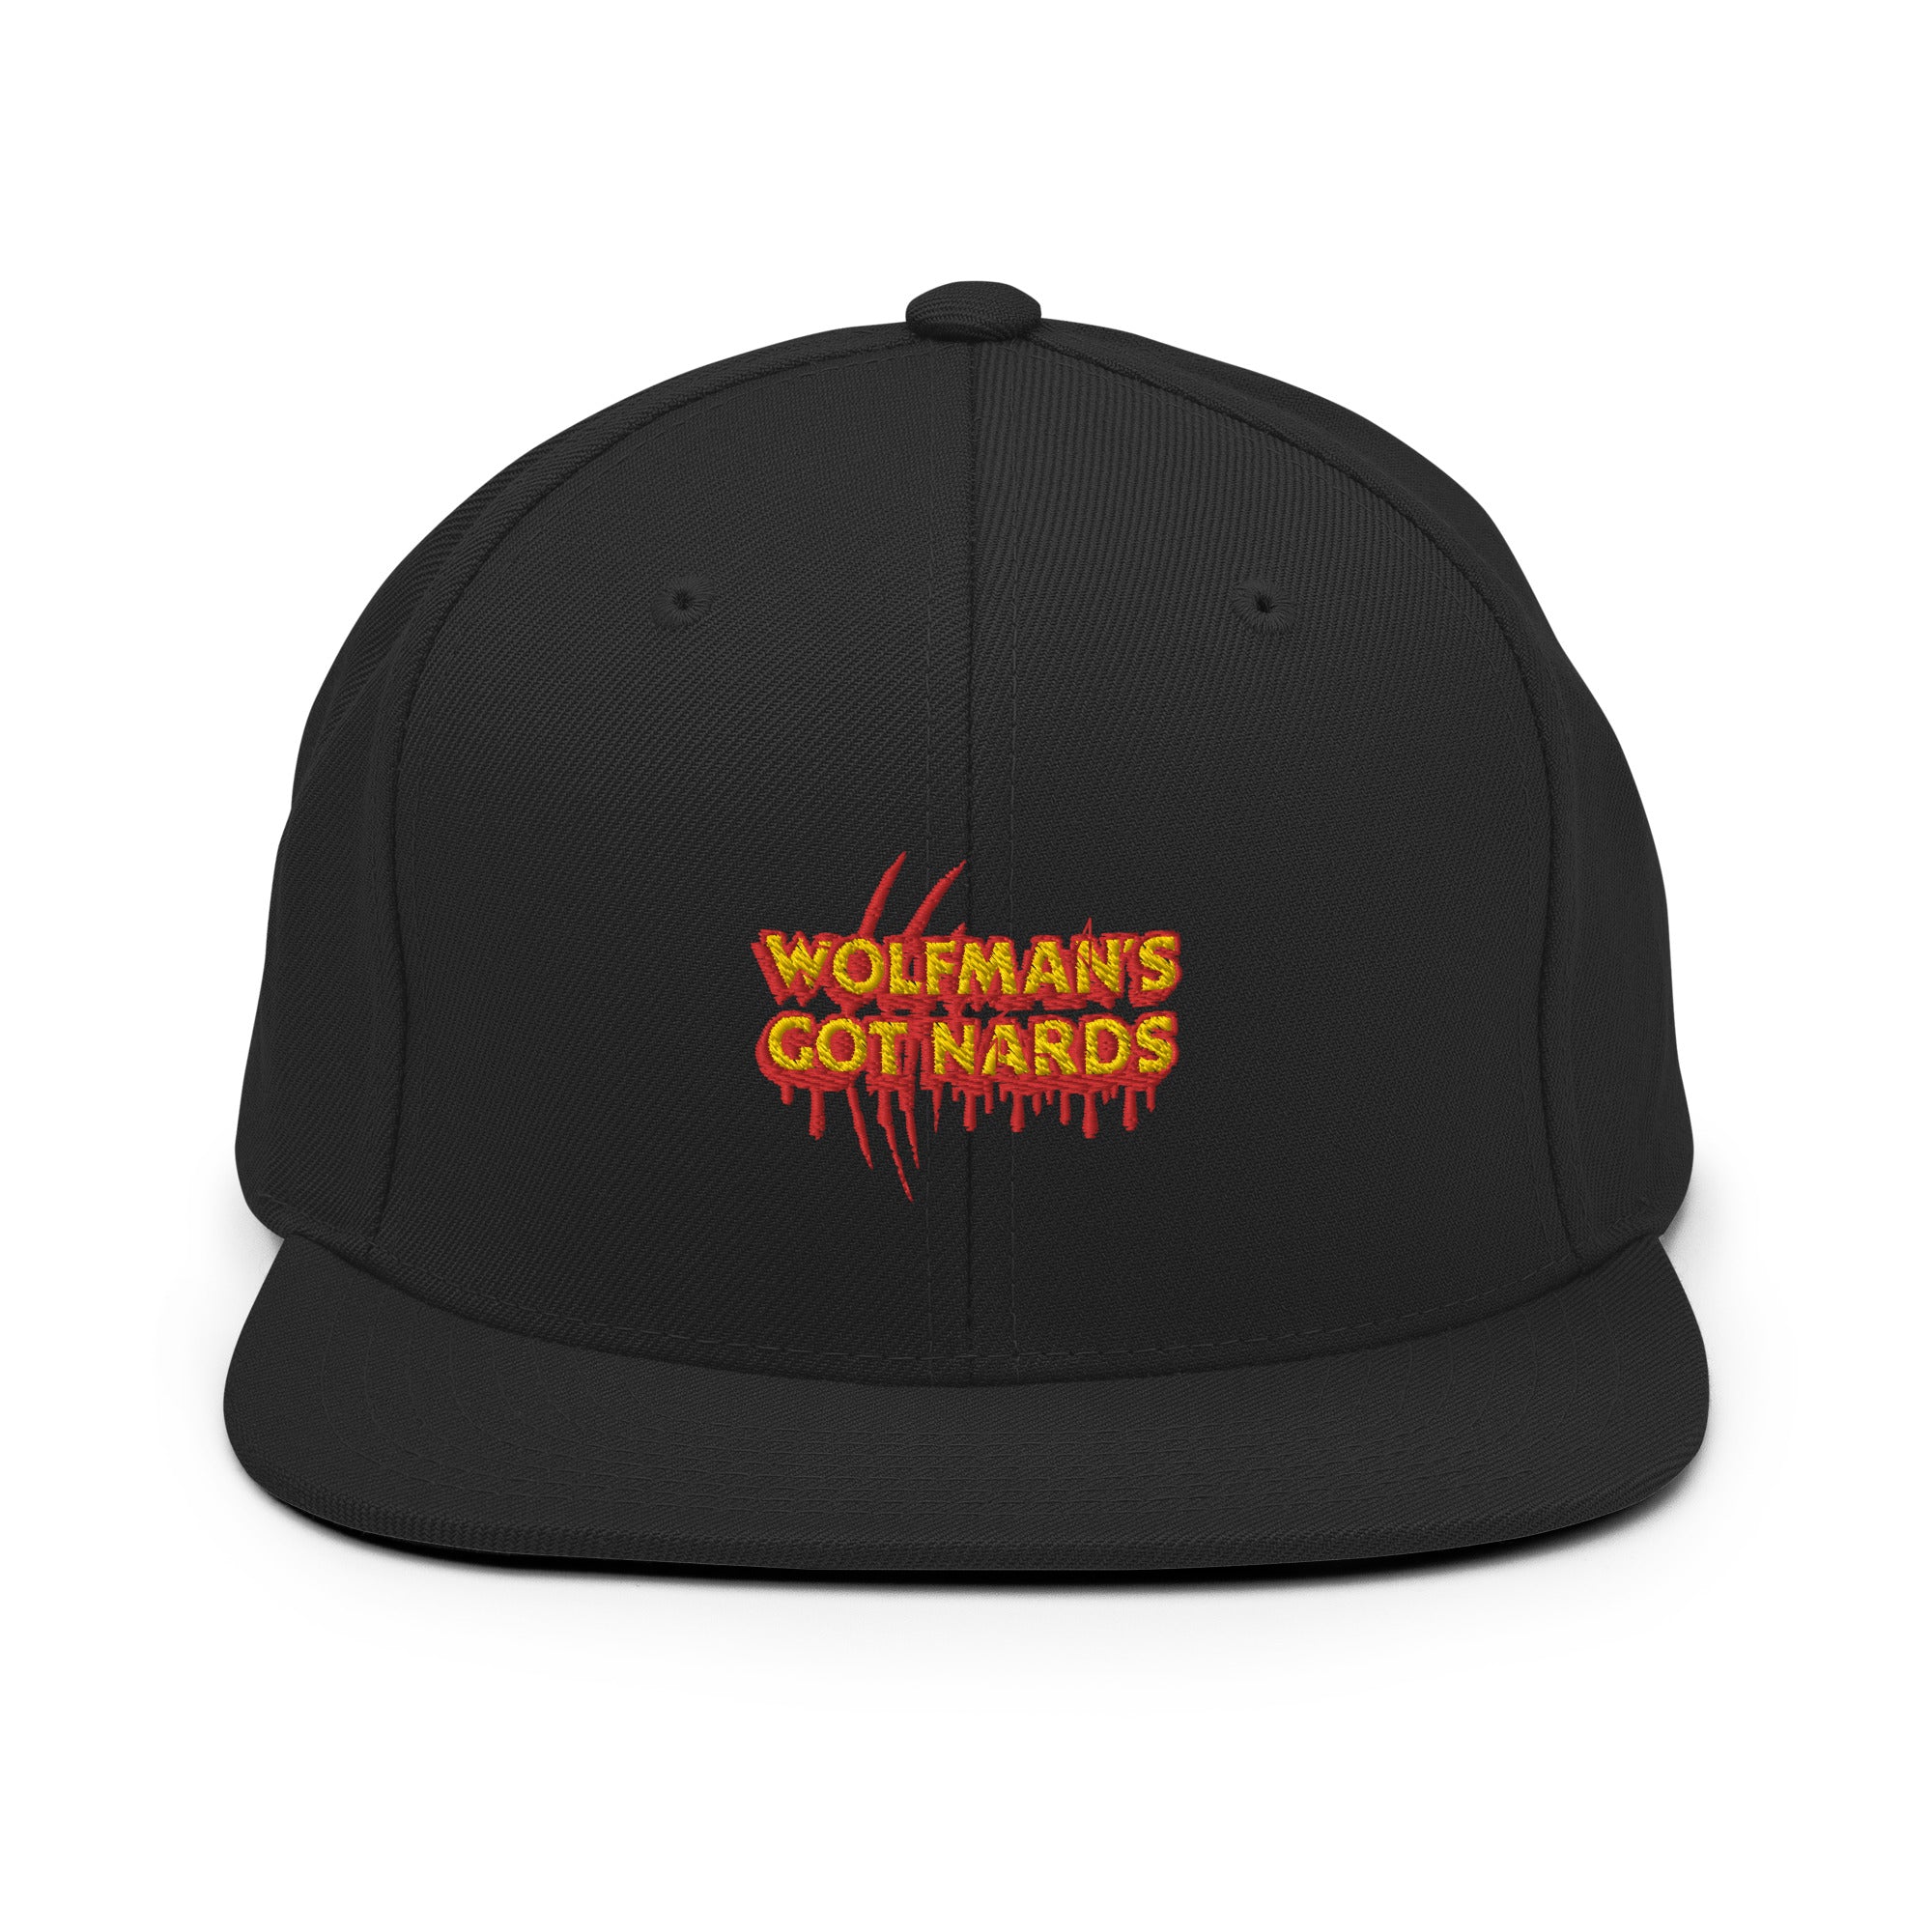 Wolfman's Got Nards - Snapback Hat